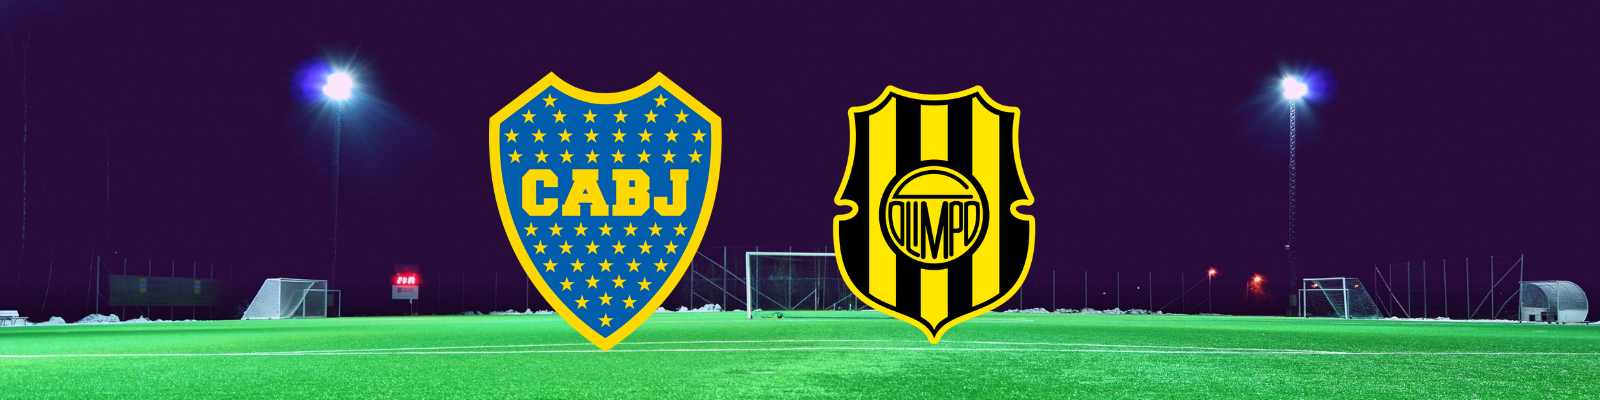 Placa gráfica con los logos de los Clubes Boca Juniors y Olimpo